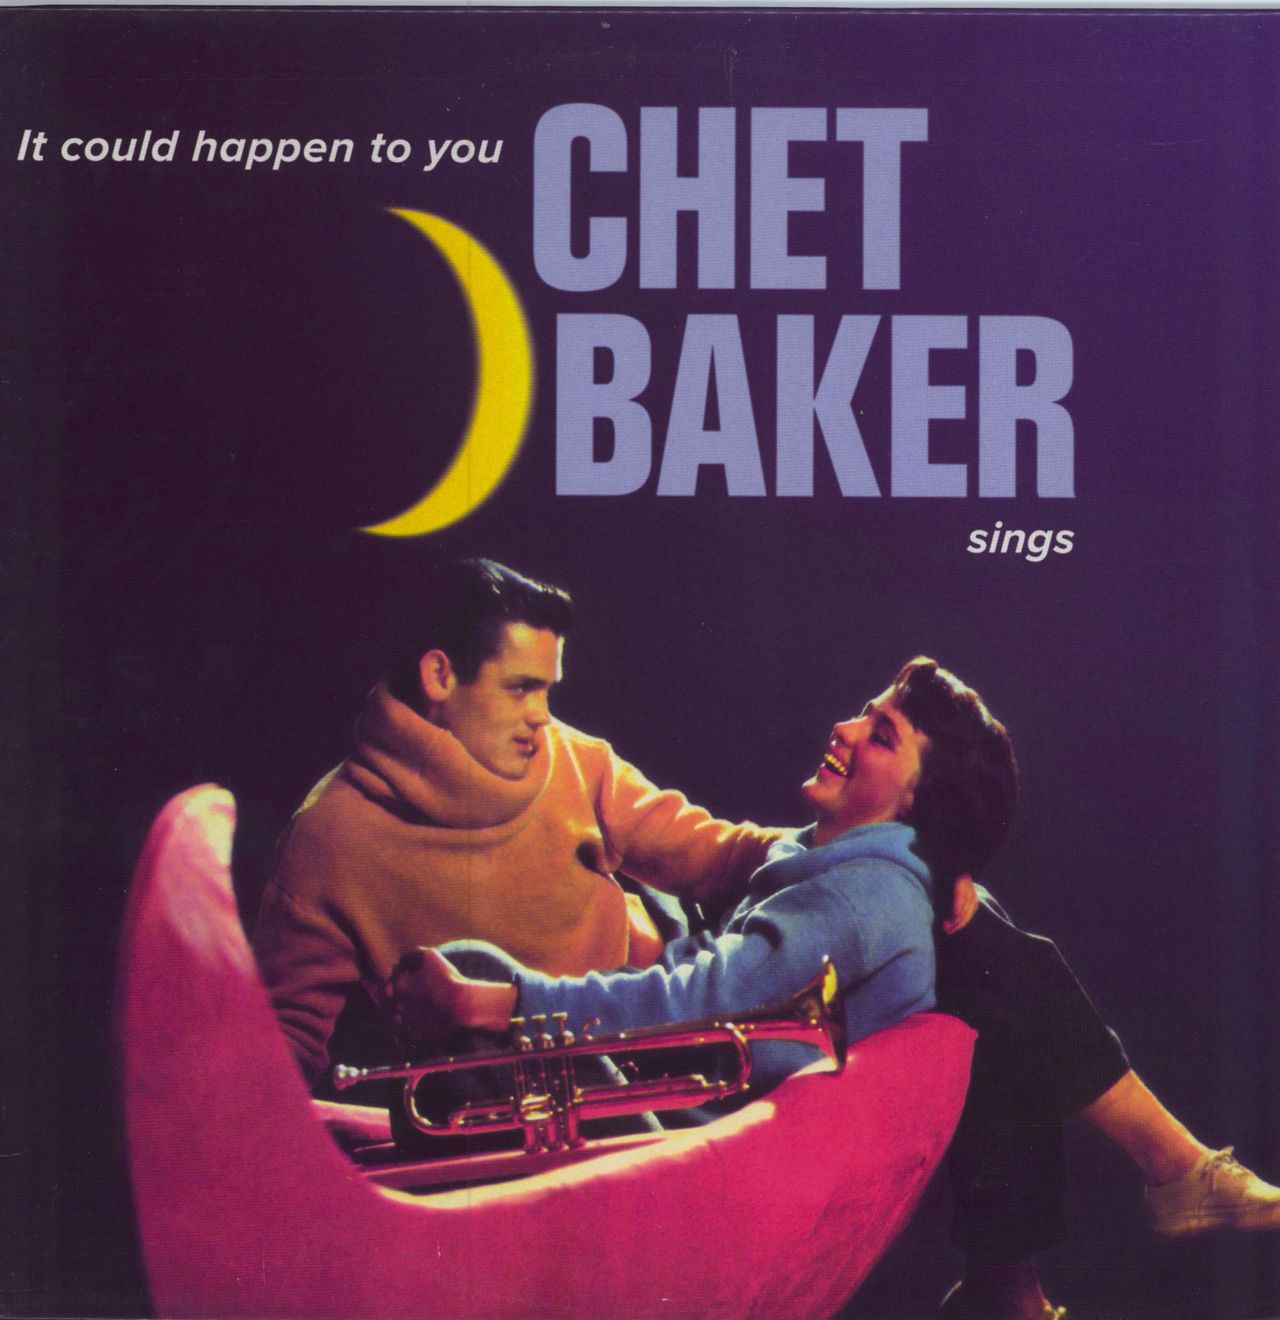 Chet Baker It Could Happen To You: Chet Baker Sings - 180gm Italian vinyl LP album (LP record) VNL12226LP